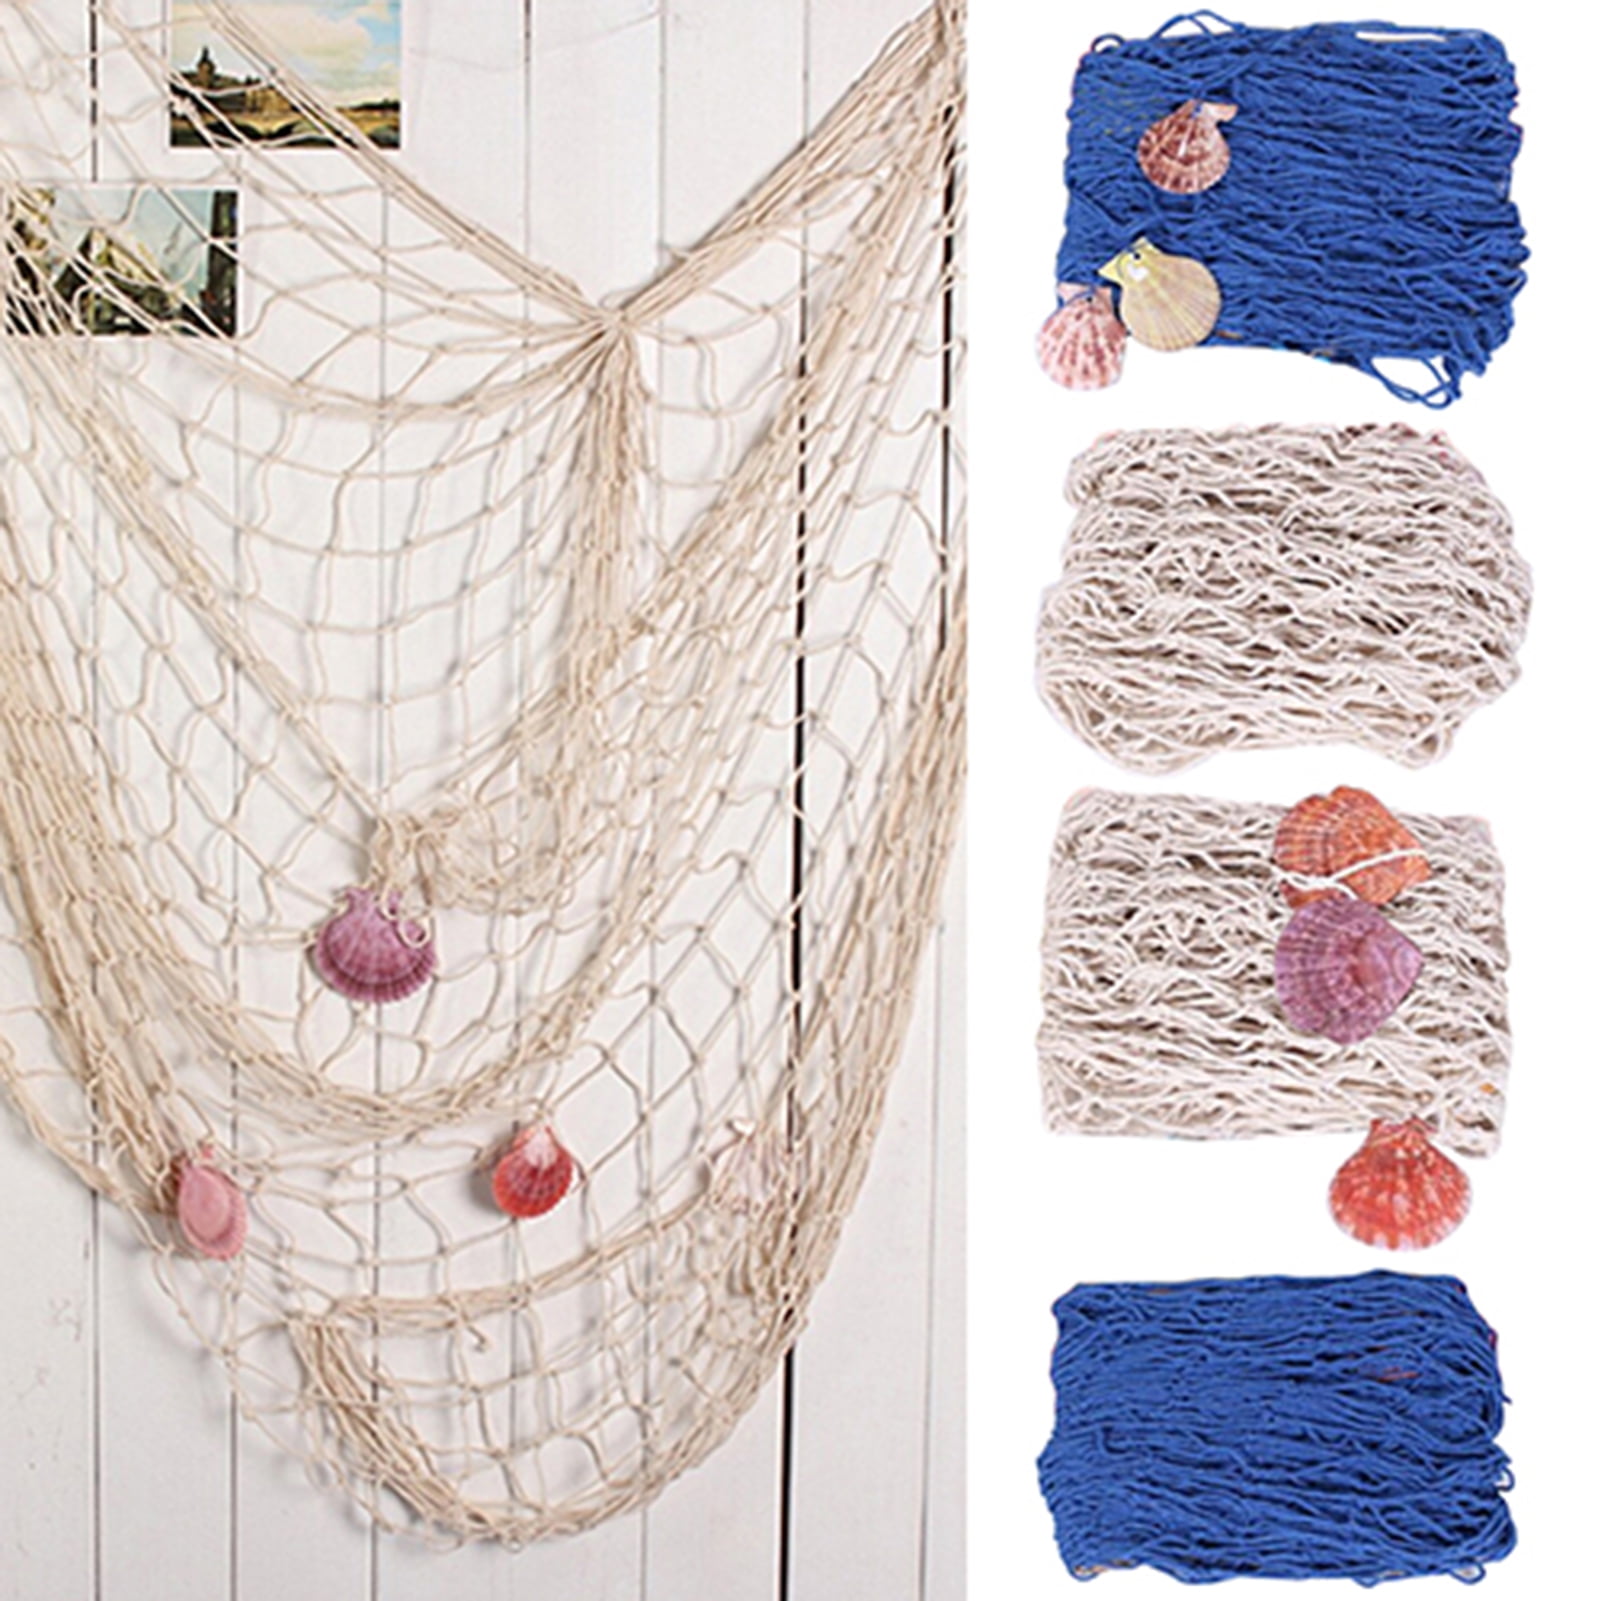 Details about   1 Set Fishing Net Decor Stylish Wall Hanging Pendant Decorative Fishing Net 